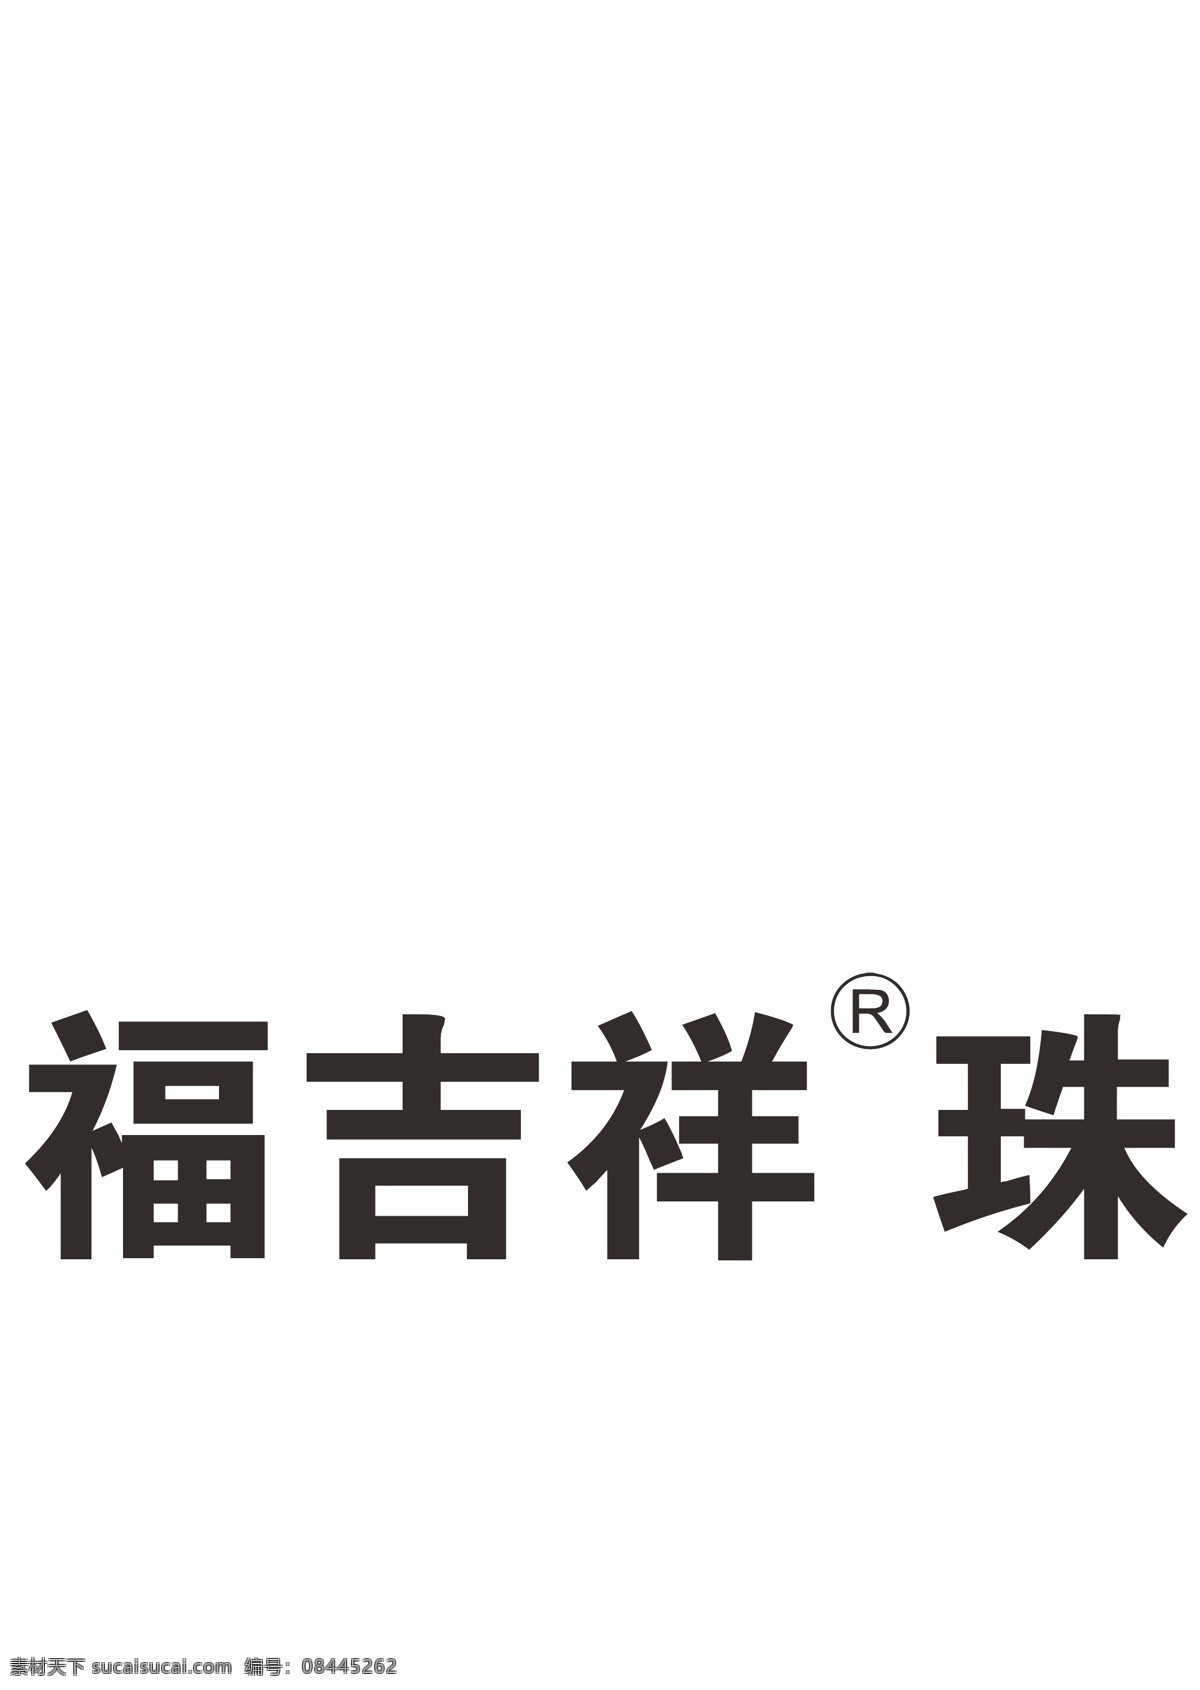 金 六 福 吉祥 珠宝 logo 吉祥珠宝 金六福 标志 标示 标志图标 企业